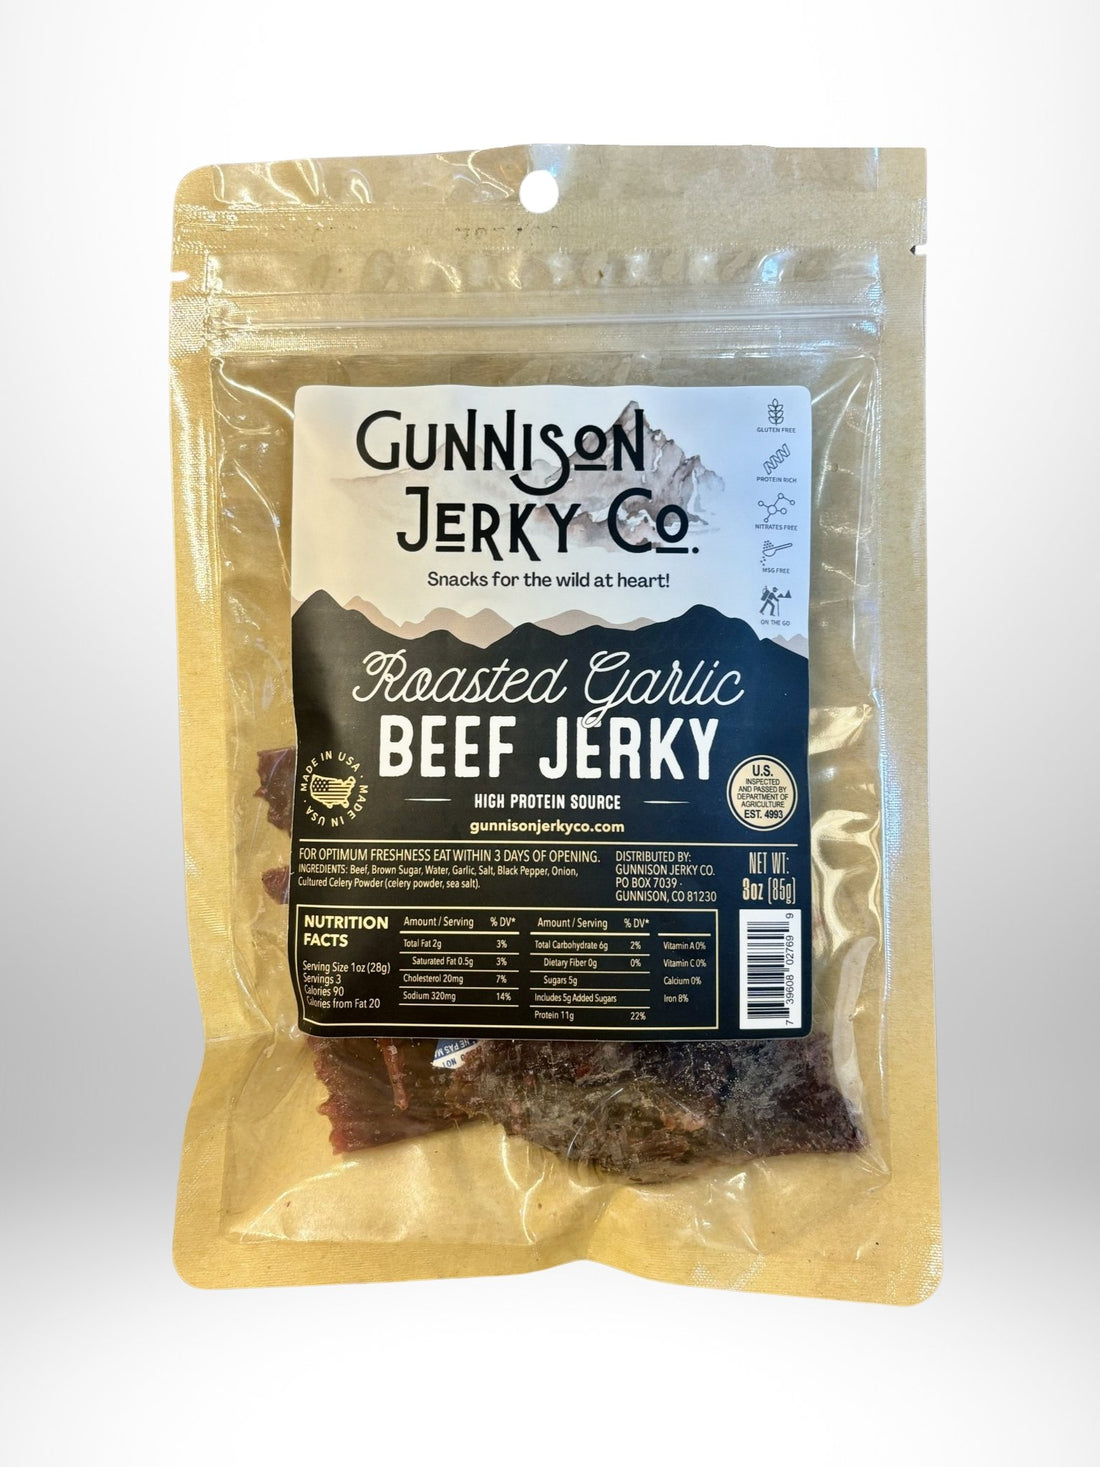 Gunnison Jerky Co. Roasted Garlic Beef Jerky